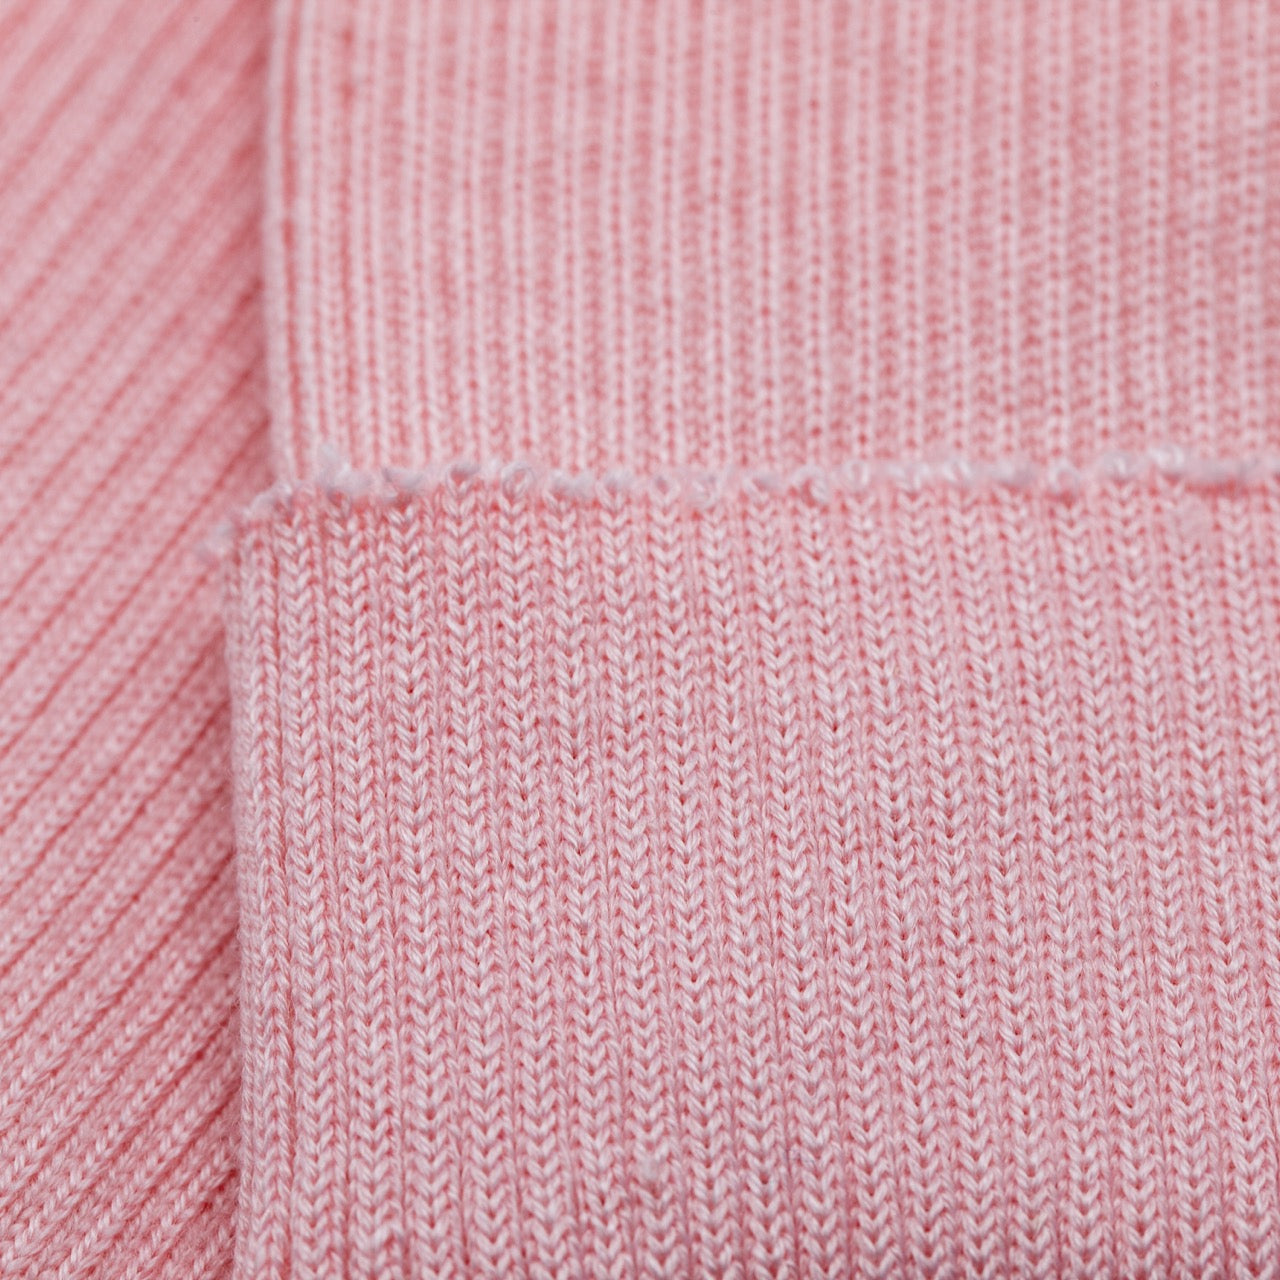 Cuffing / Tubular - Pink (2x2) - detail